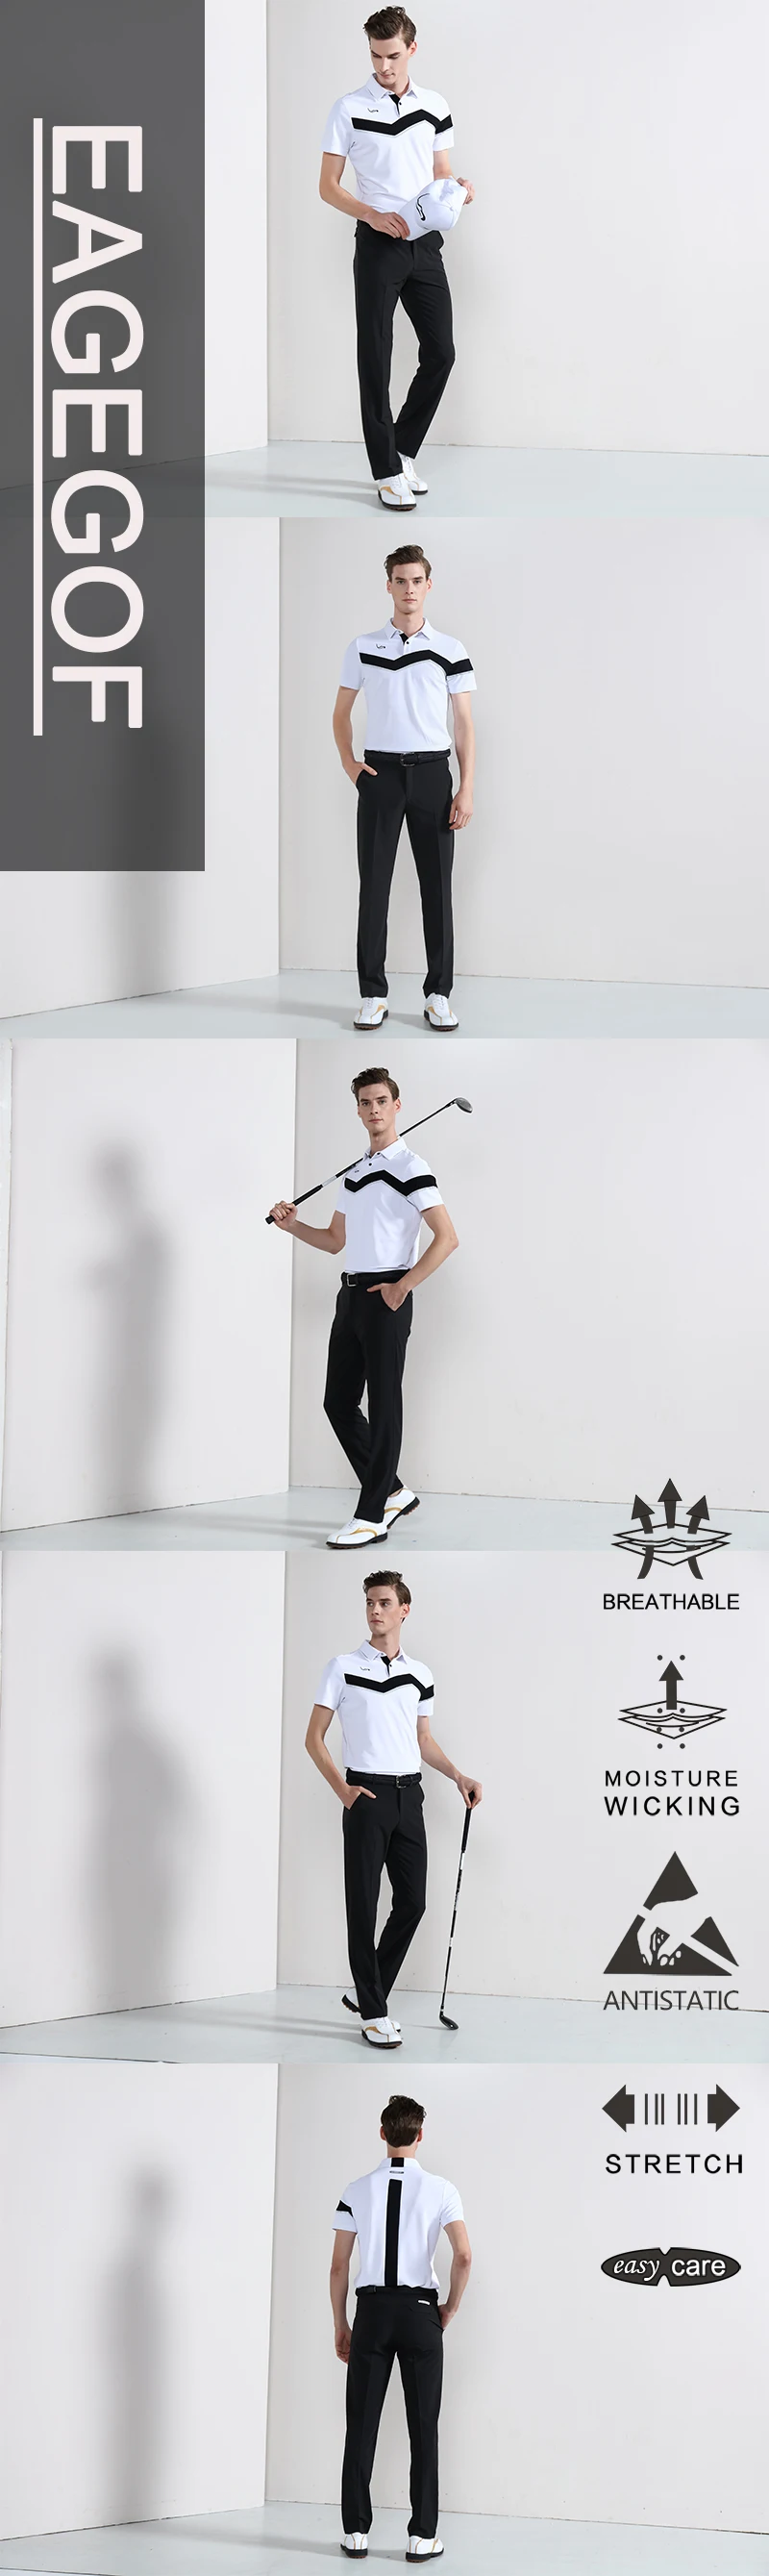 EAGEGOF рубашка для гольфа мужская спортивная одежда с коротким рукавом летняя быстросохнущая Мужская одежда для гольфа для тренировок Модная брендовая одежда для гольфа